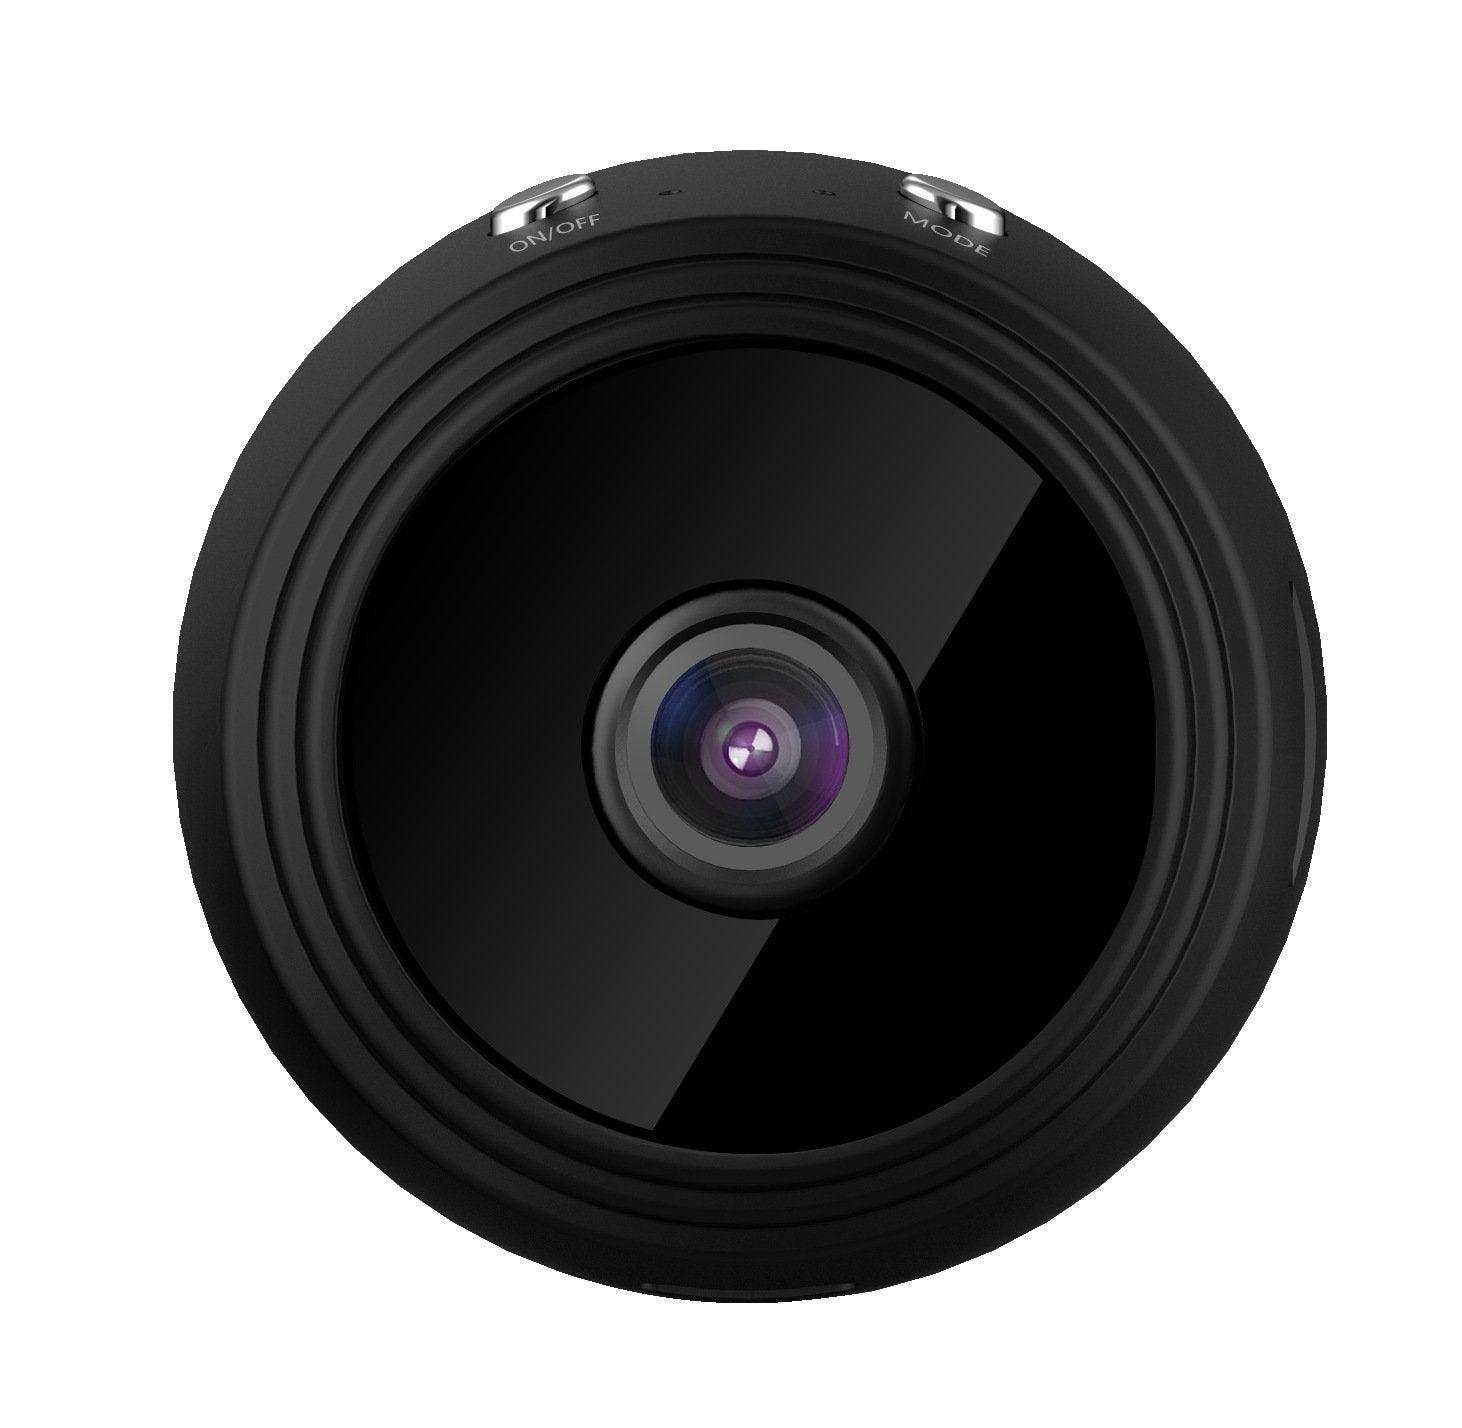 Smart Magnetic CCTV Security Camera - Rarefinda.com